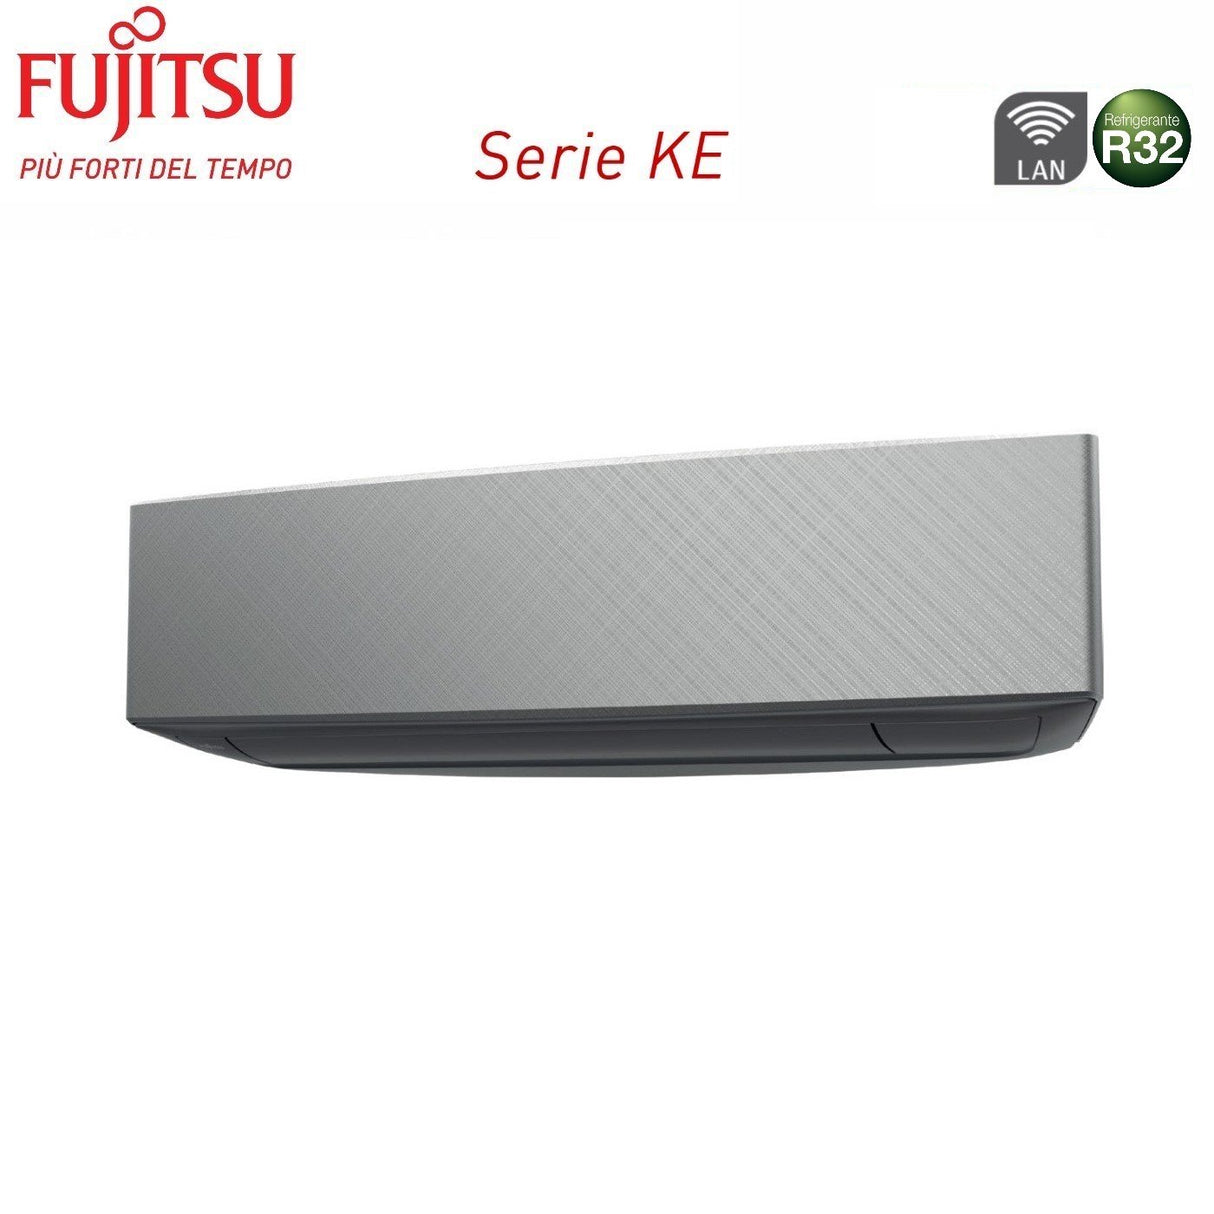 immagine-3-fujitsu-climatizzatore-condizionatore-fujitsu-dual-split-inverter-serie-ke-silver-1214-con-aoyg18kbta2-r-32-wi-fi-integrato-1200014000-colore-argento